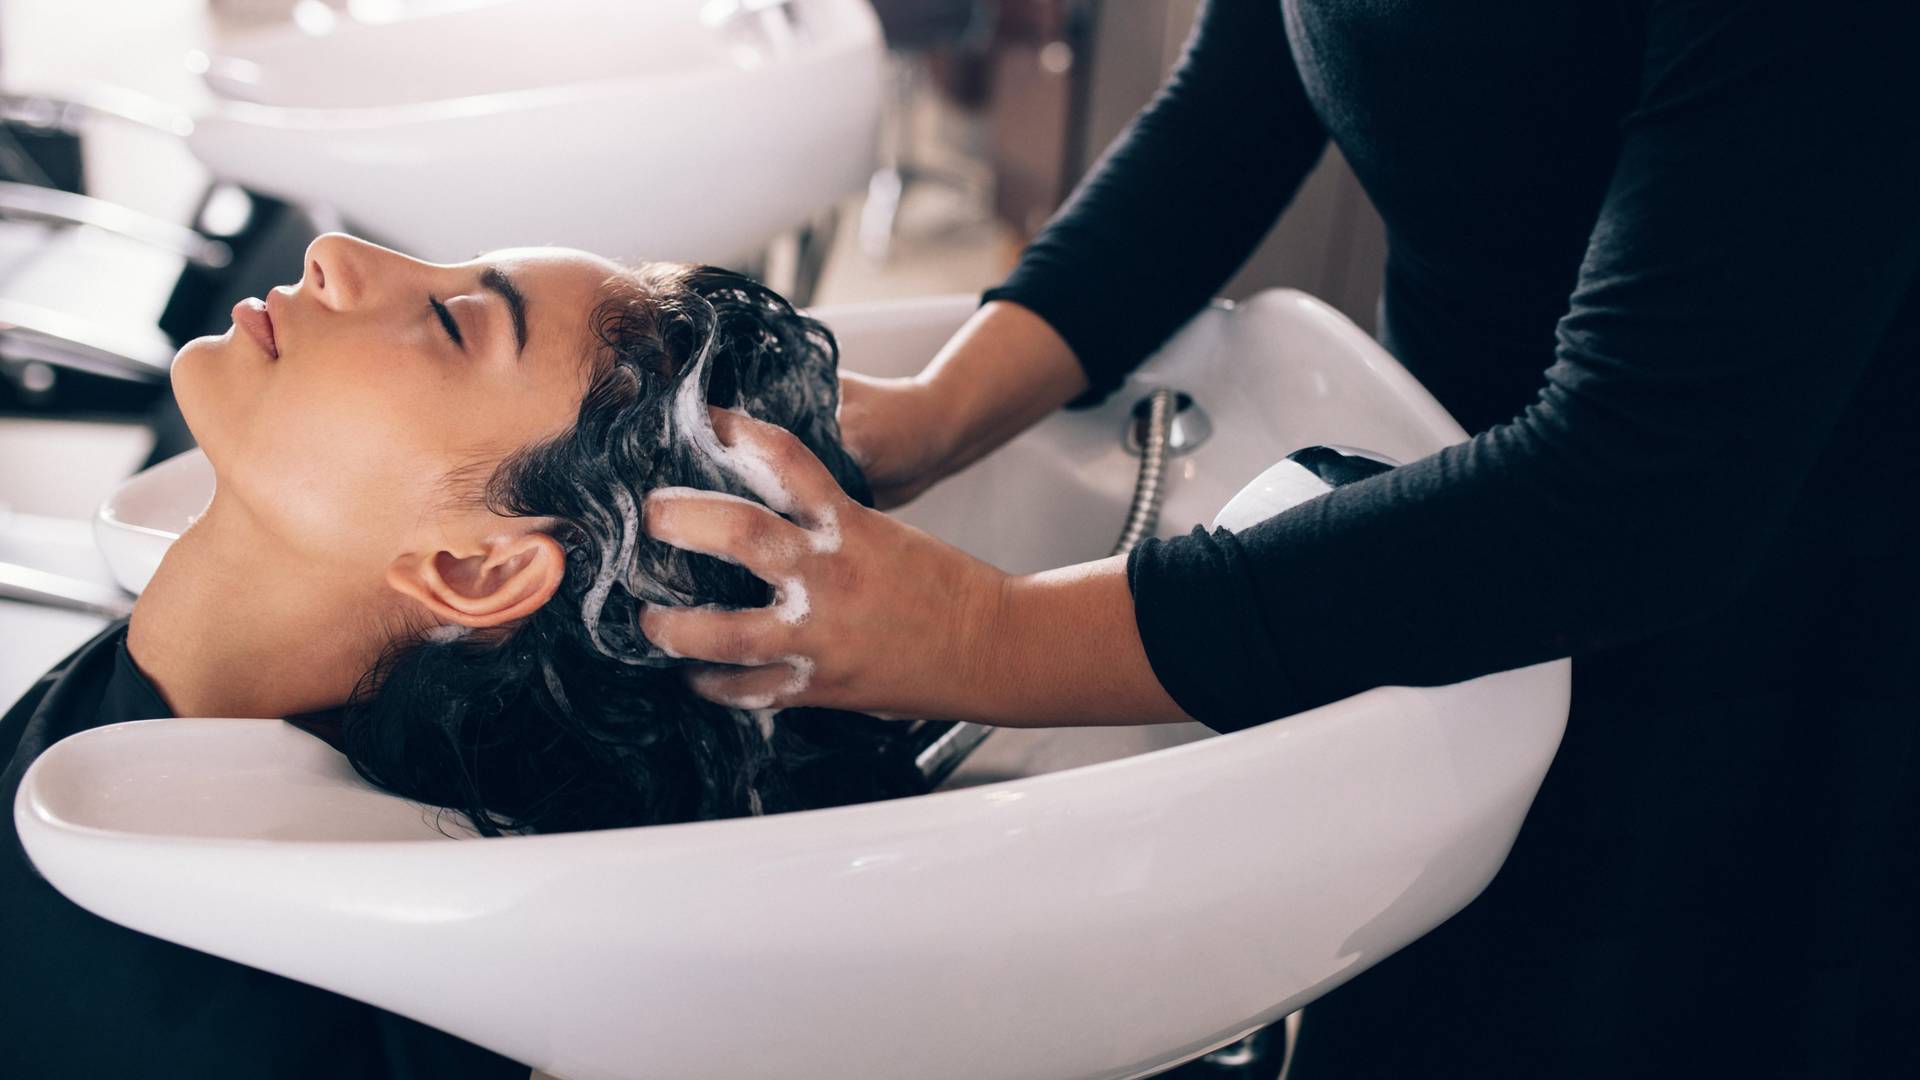 "Bojanin šampon": Recept za brži rast kose koji je osvojio domaći net